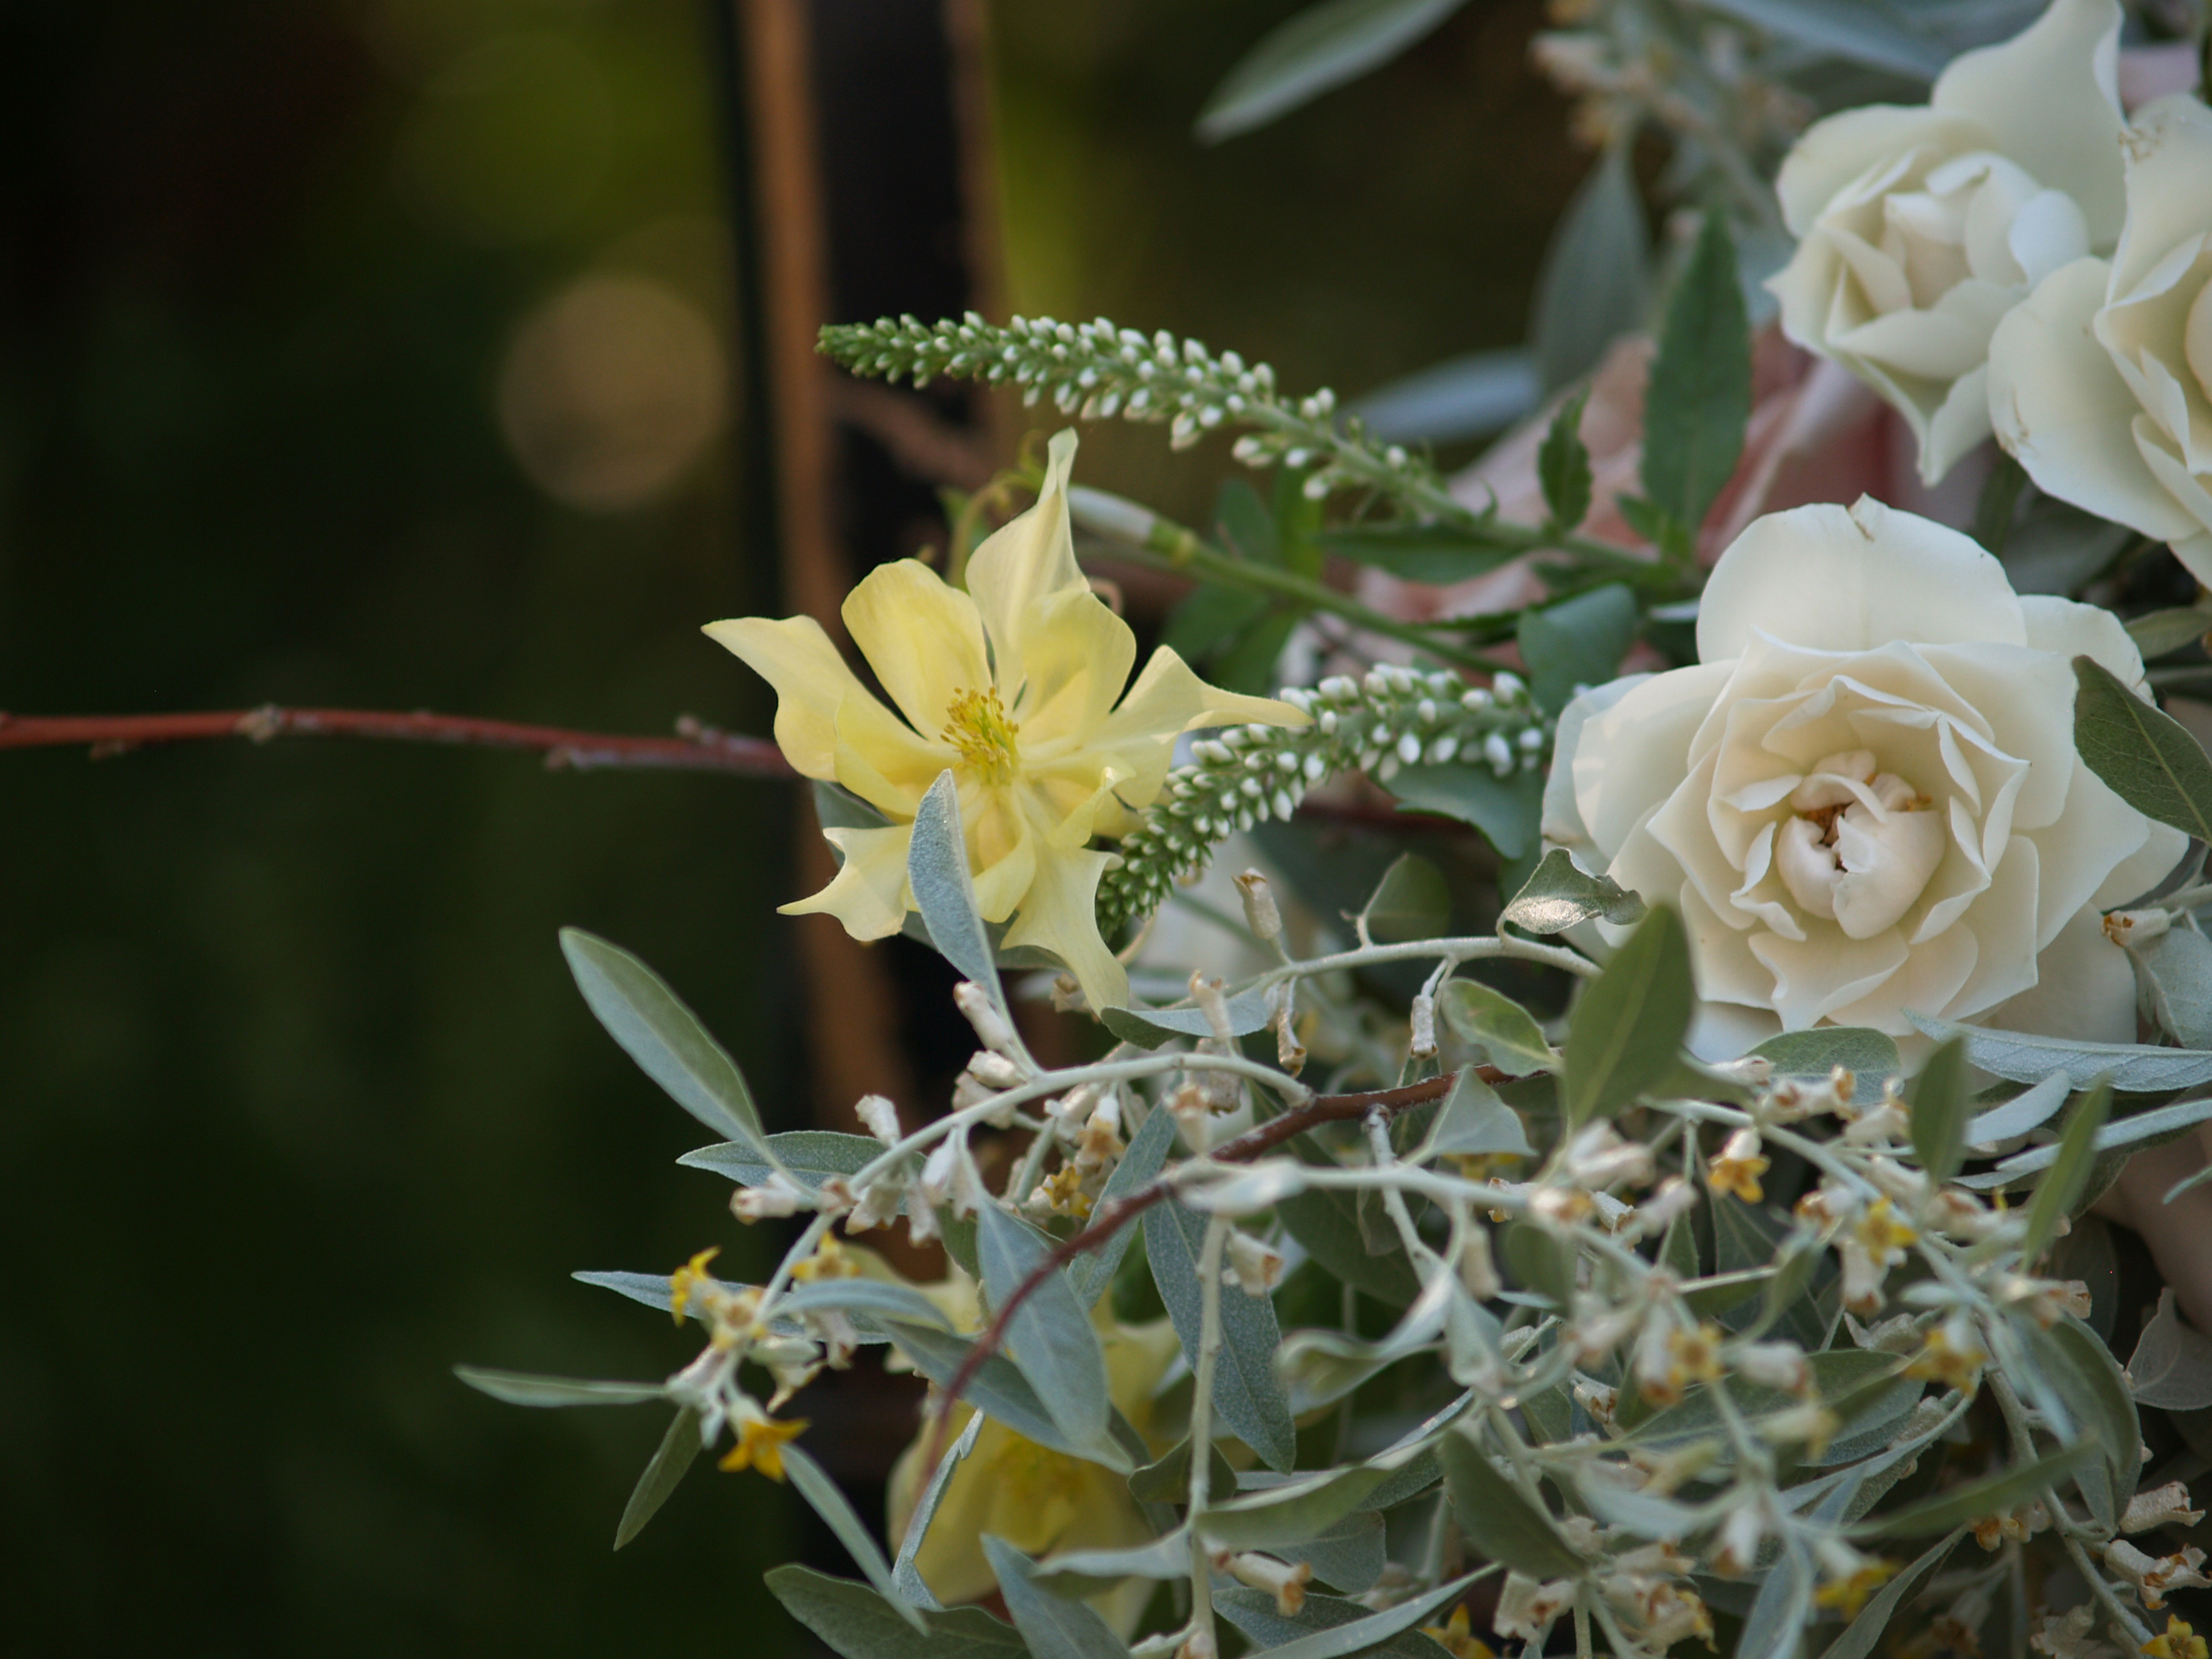 rustic arrangement close up of yellow columbine bloom